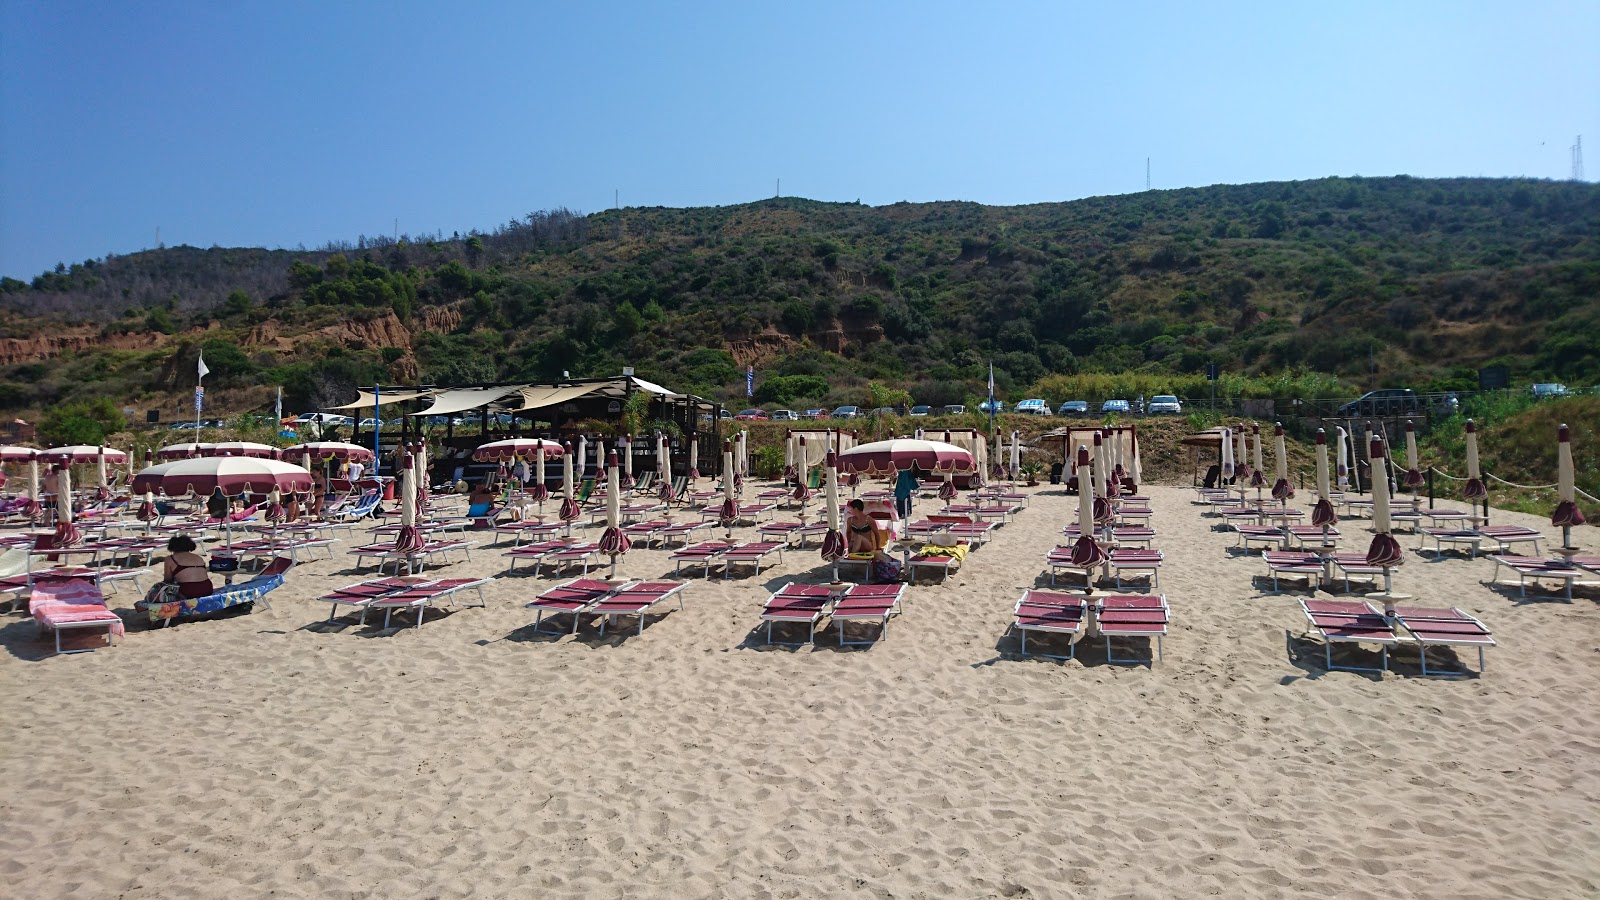 Foto af Spiaggia Le Saline II - populært sted blandt afslapningskendere